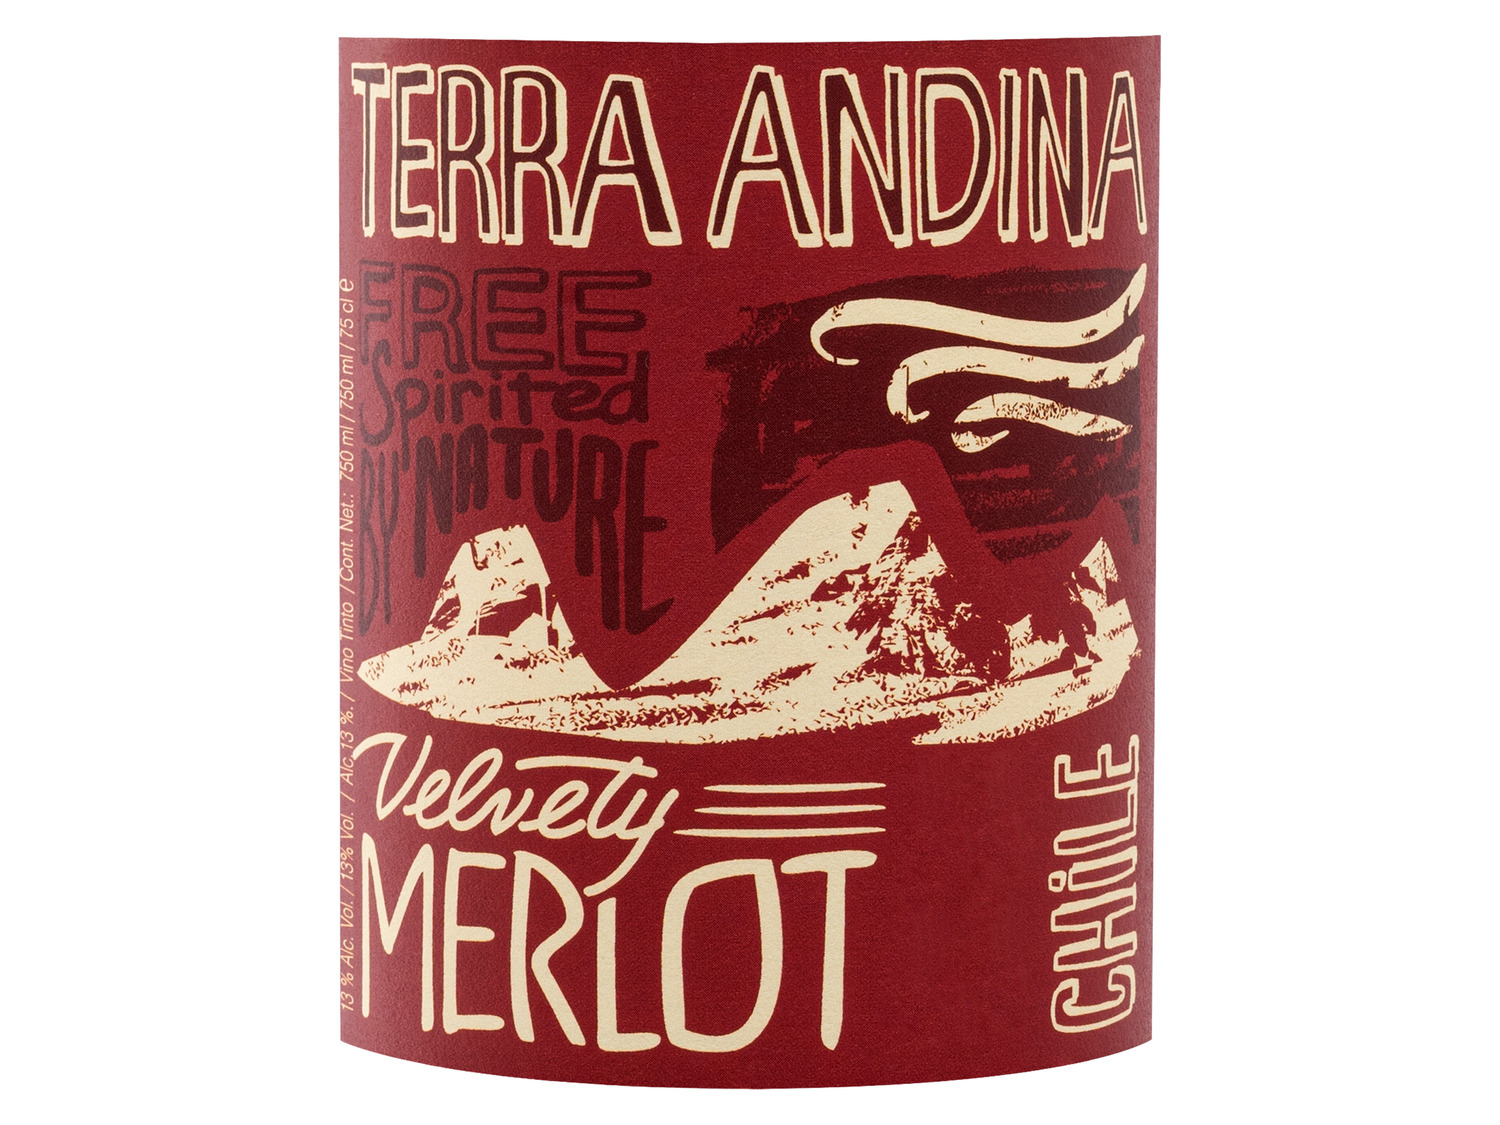 Central Rotw… Chile Merlot Velvety Terra Andina Valley,